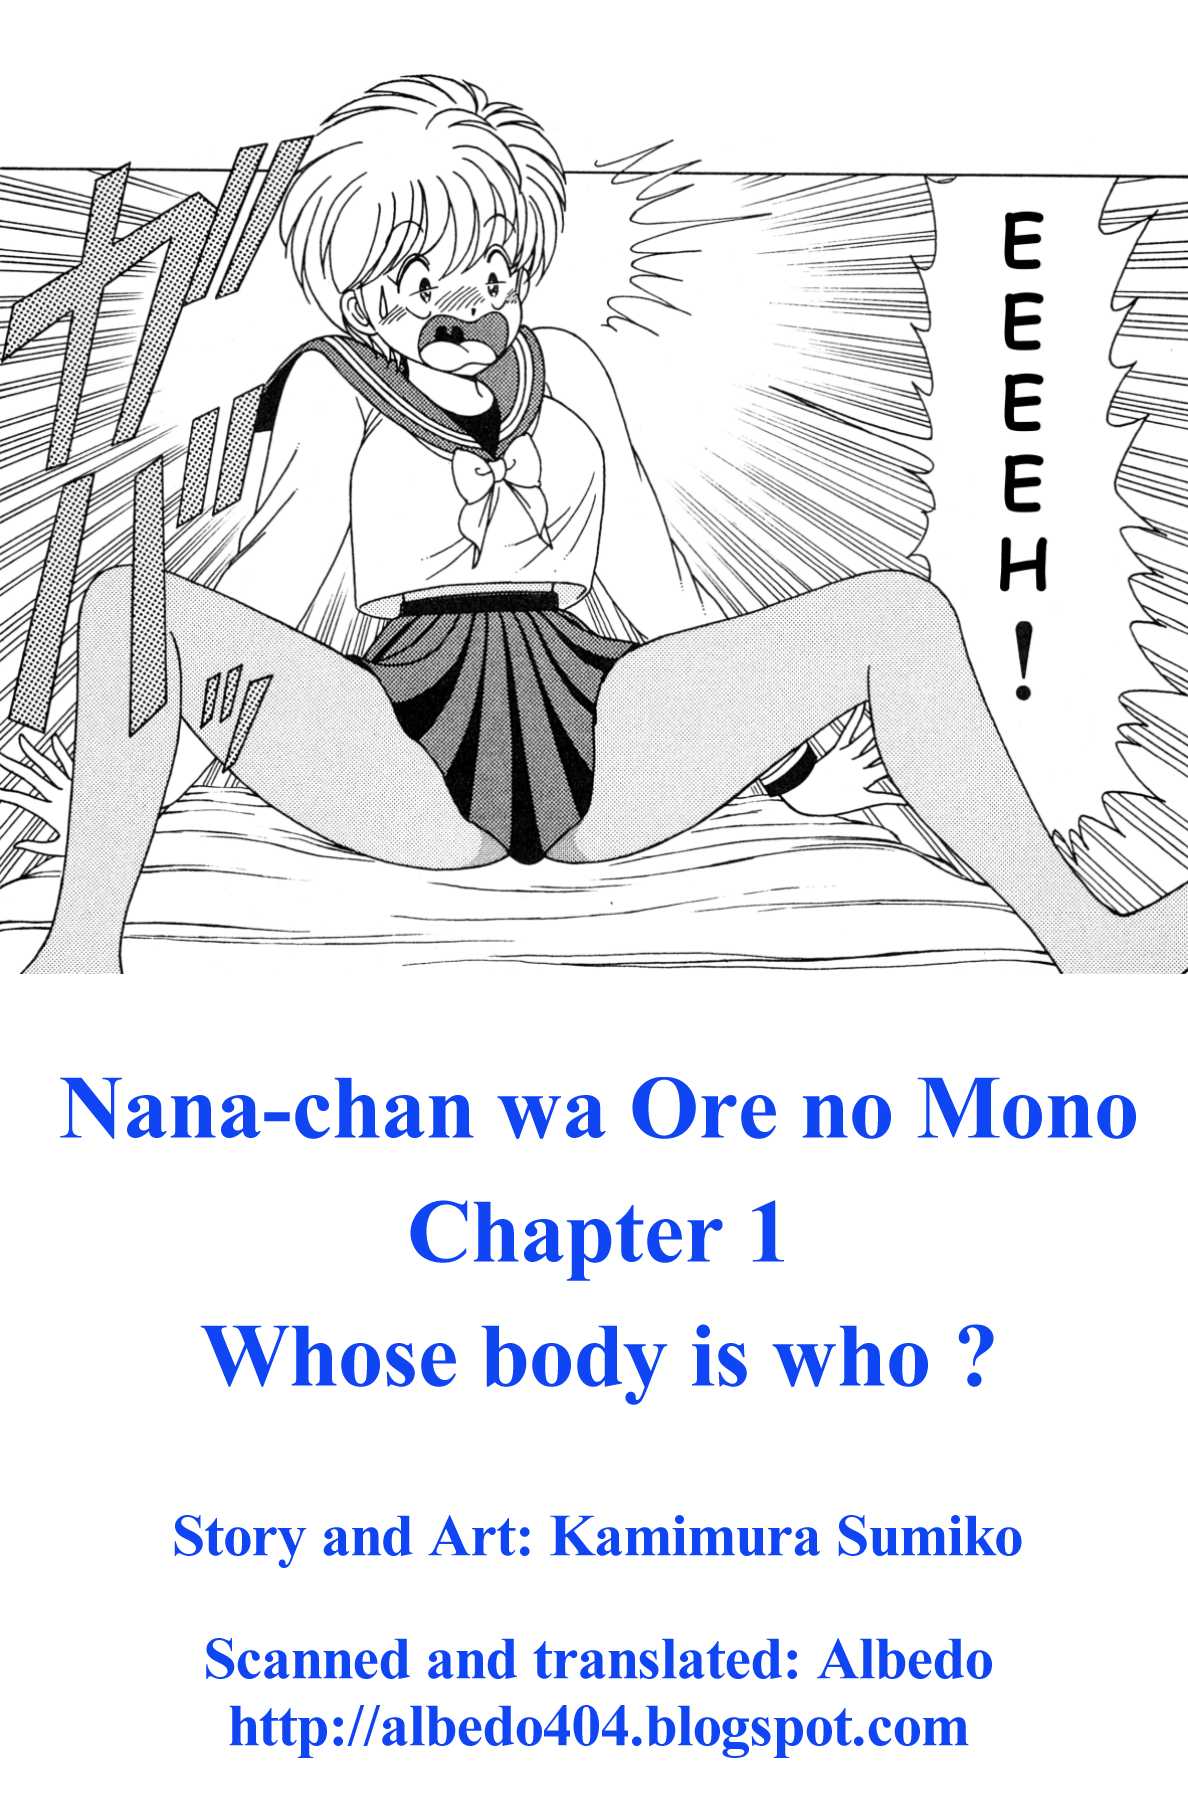 Nana-chan wa Ore no Mono ch 1 [English] 菜々ちゃんは俺のもの